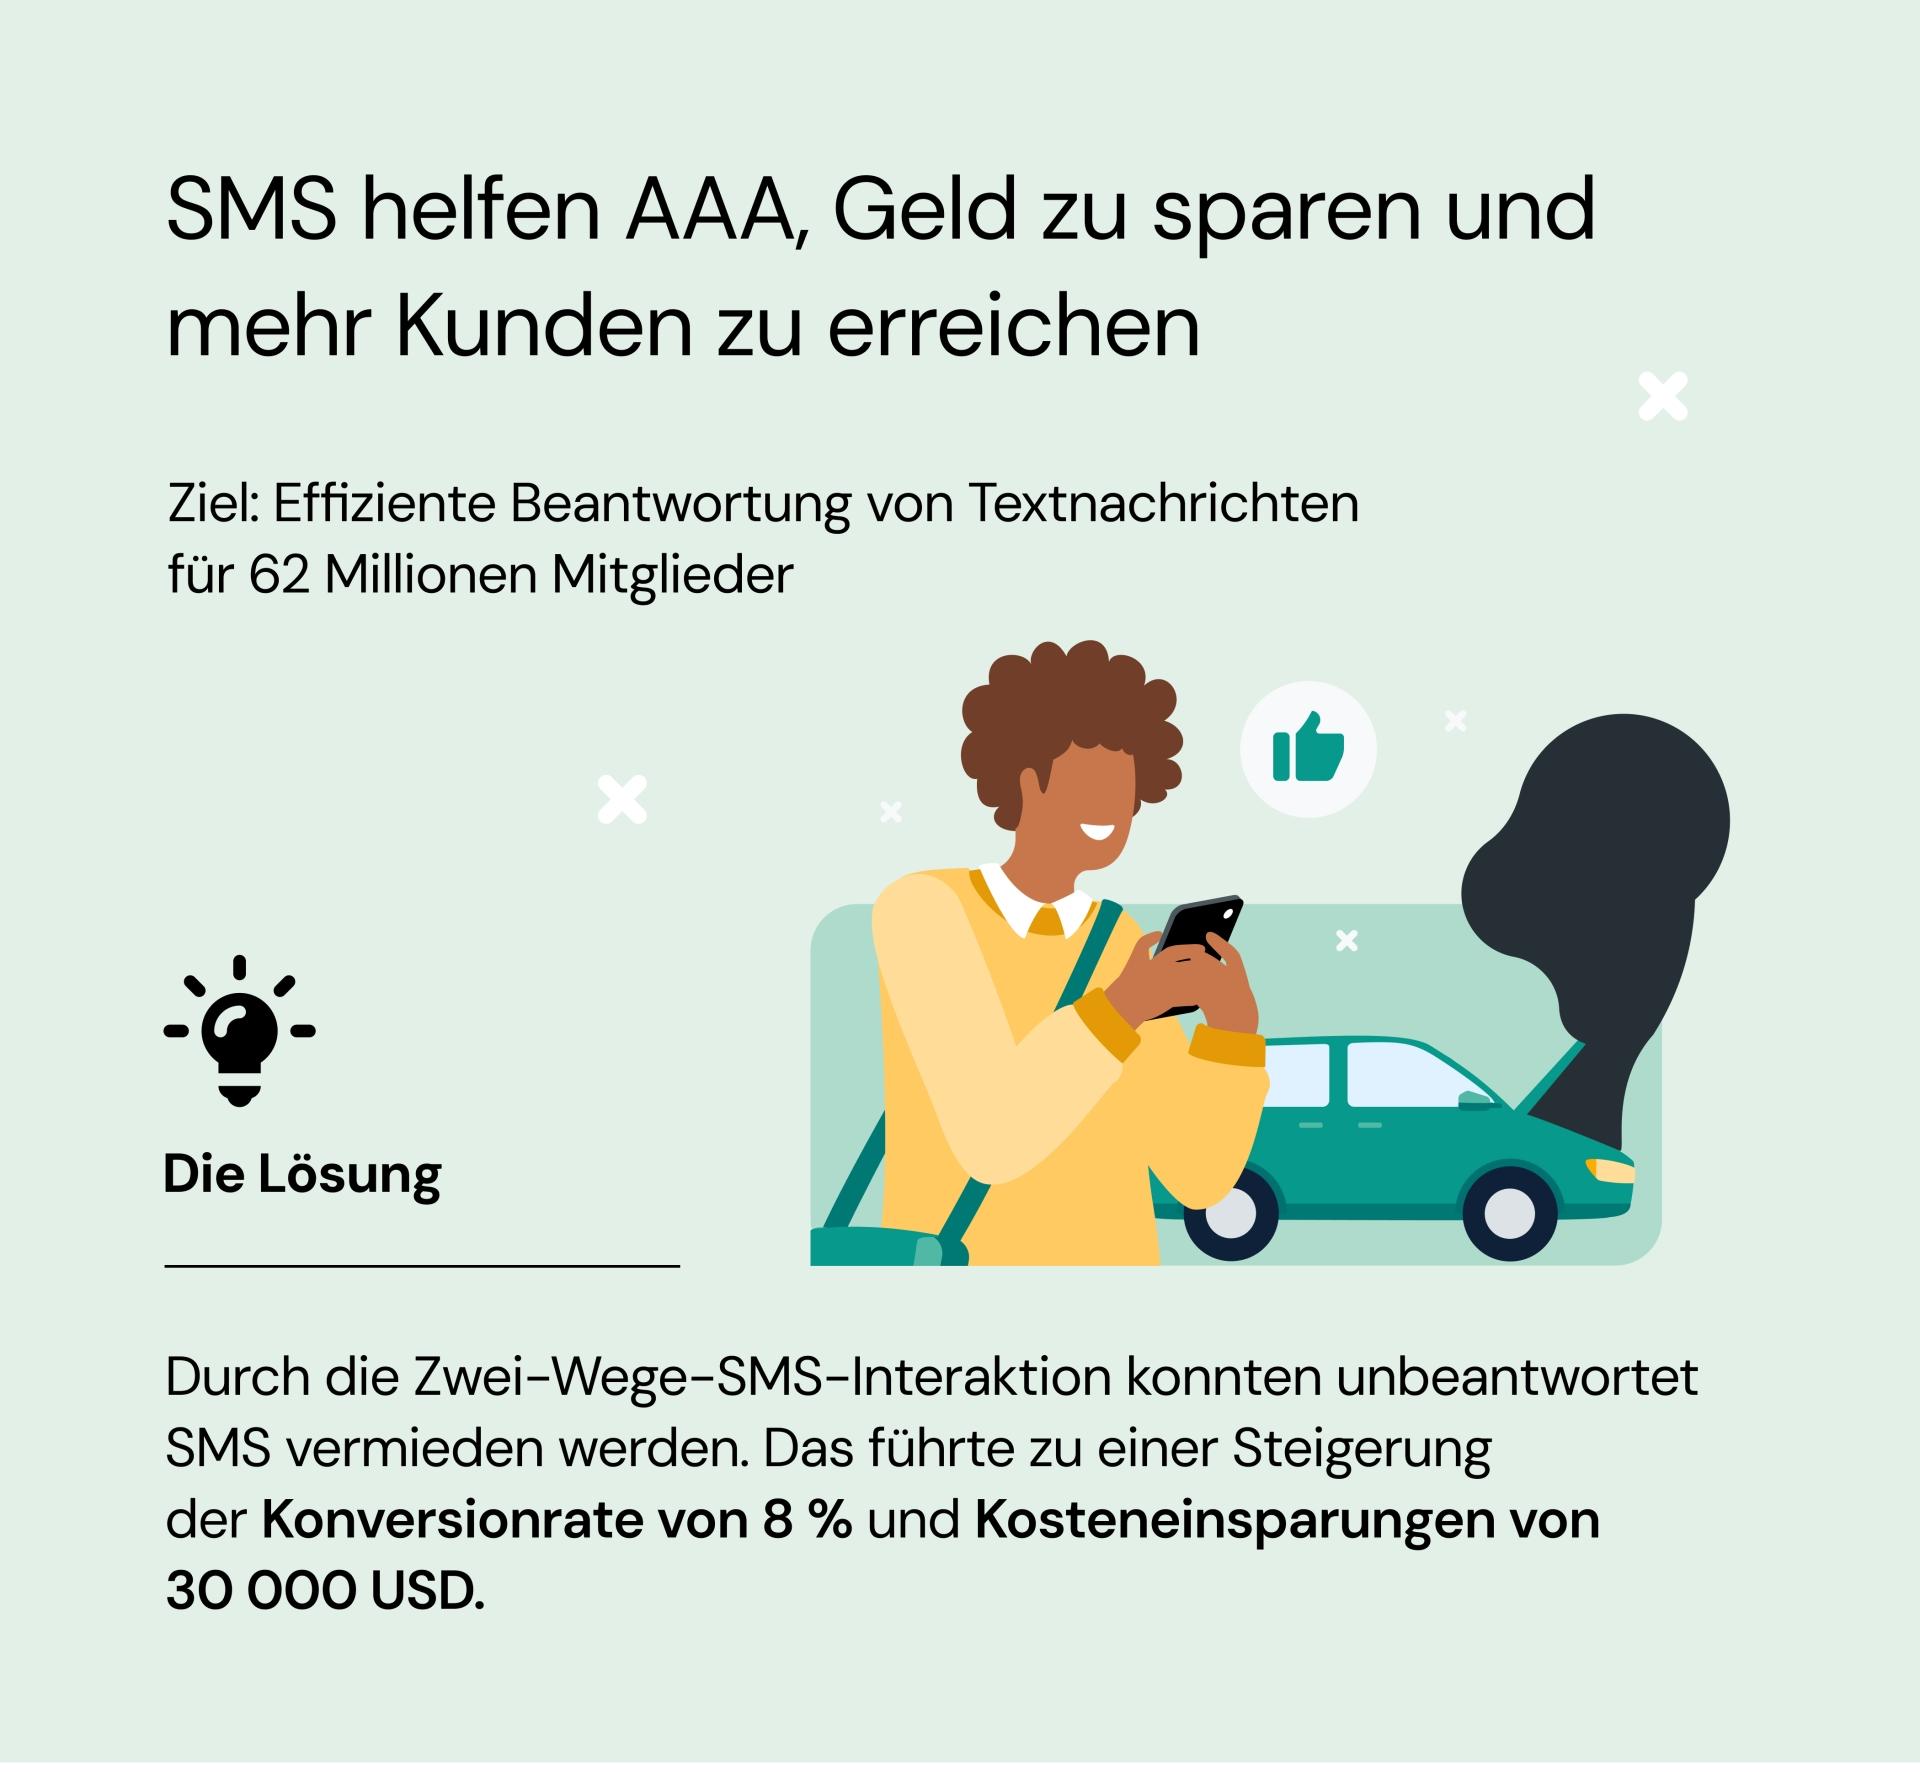 Wie SMS AAA hilft, Kunden anzusprechen und Geld zu sparen.